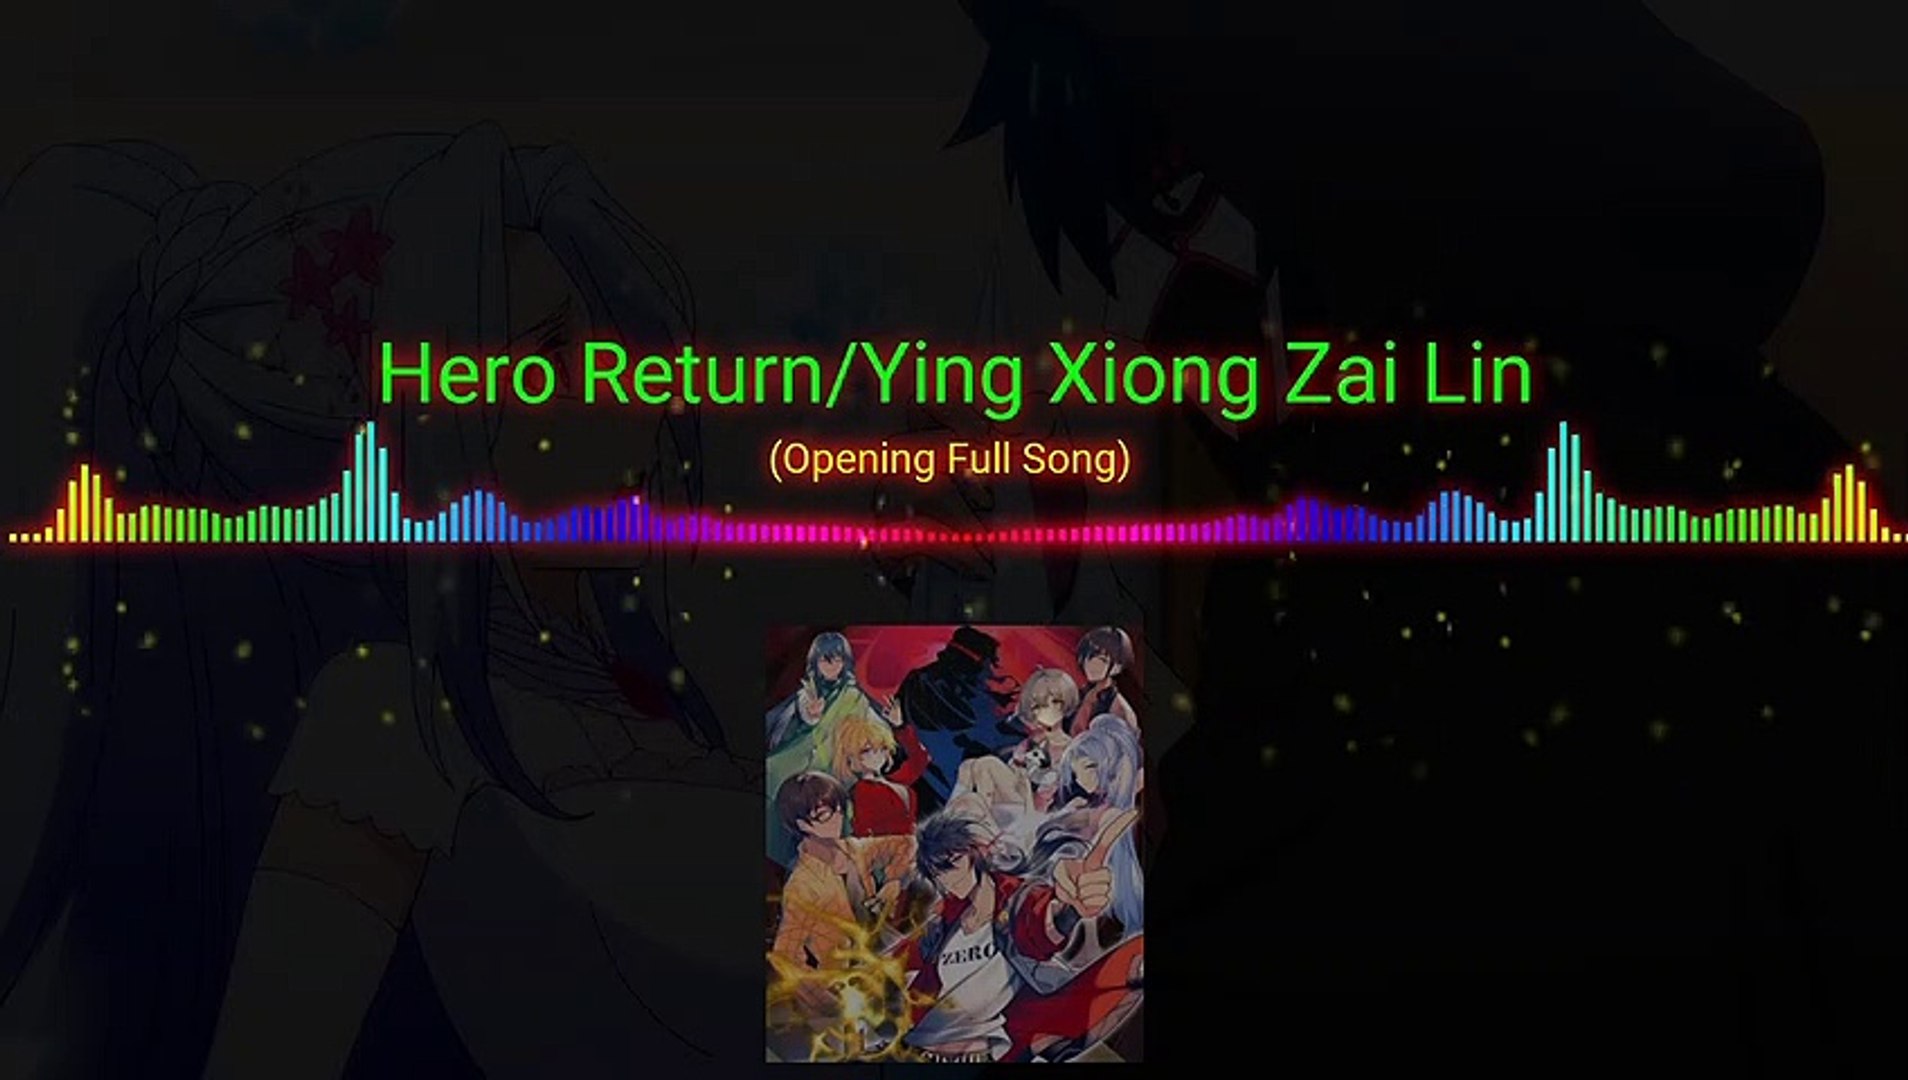 Yingxiong Zai Lin (Hero Return) 